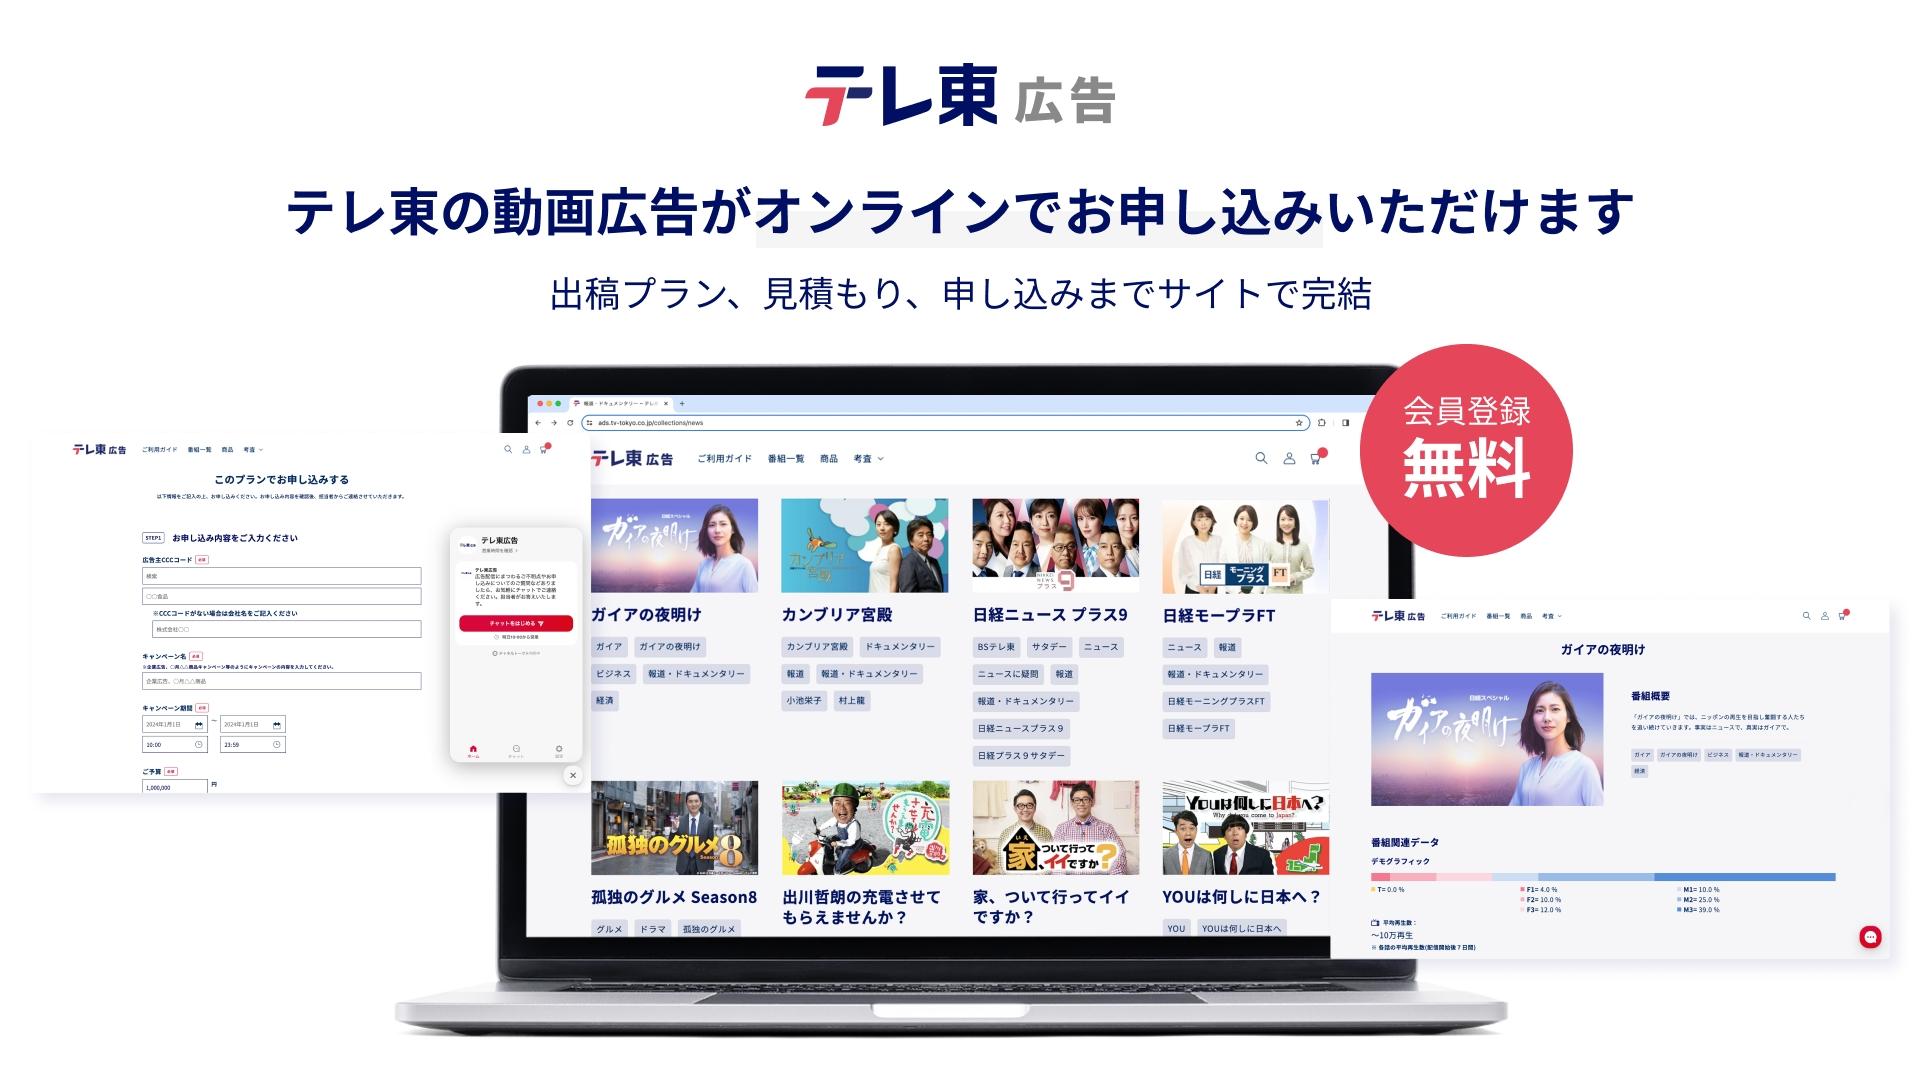 テレビ東京、動画広告をオンラインで申込み可能なプラットフォームの運用開始